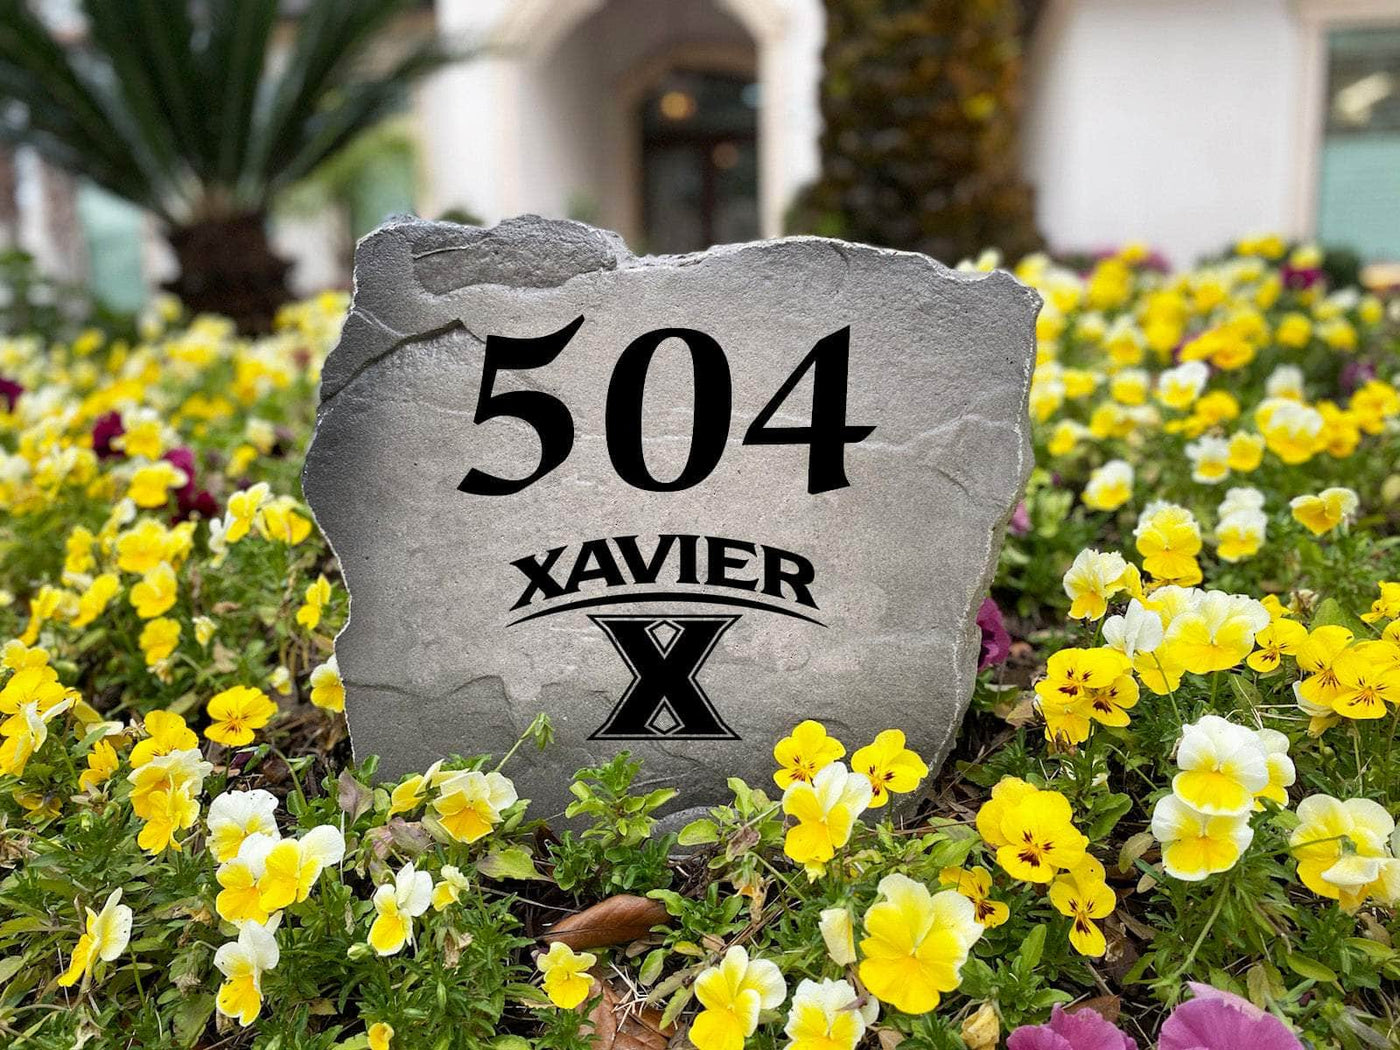 Xavier University Address Stone